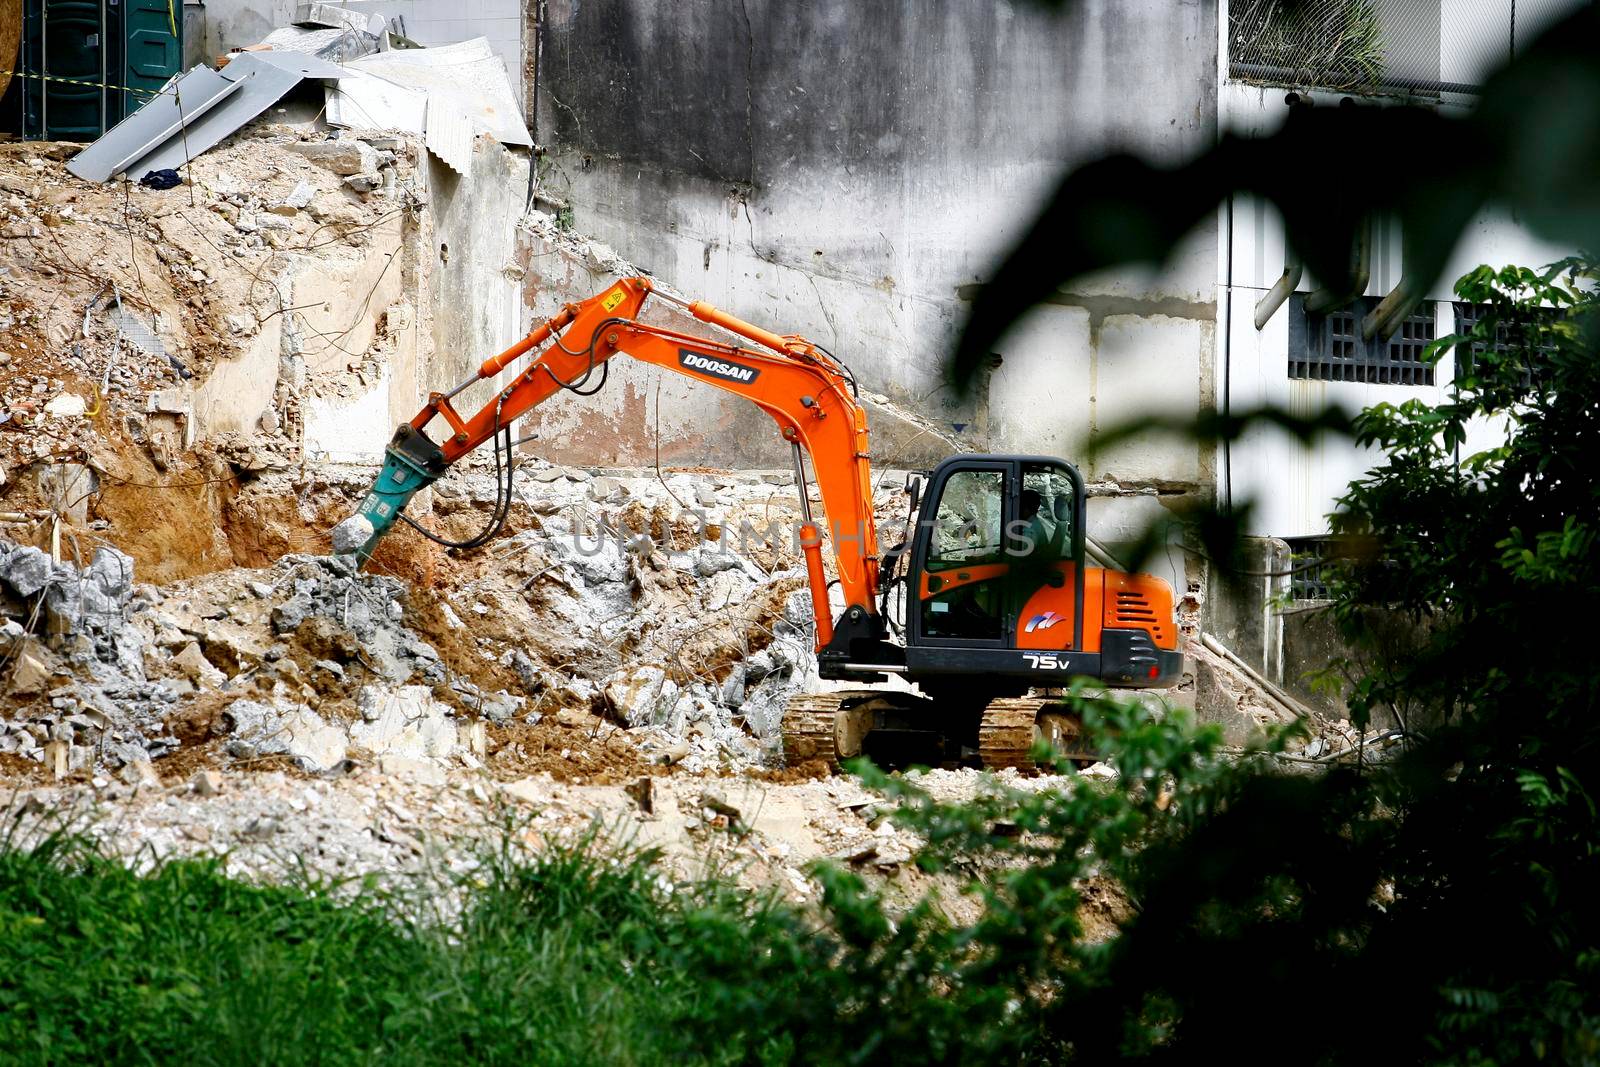 machine in demolition work by joasouza